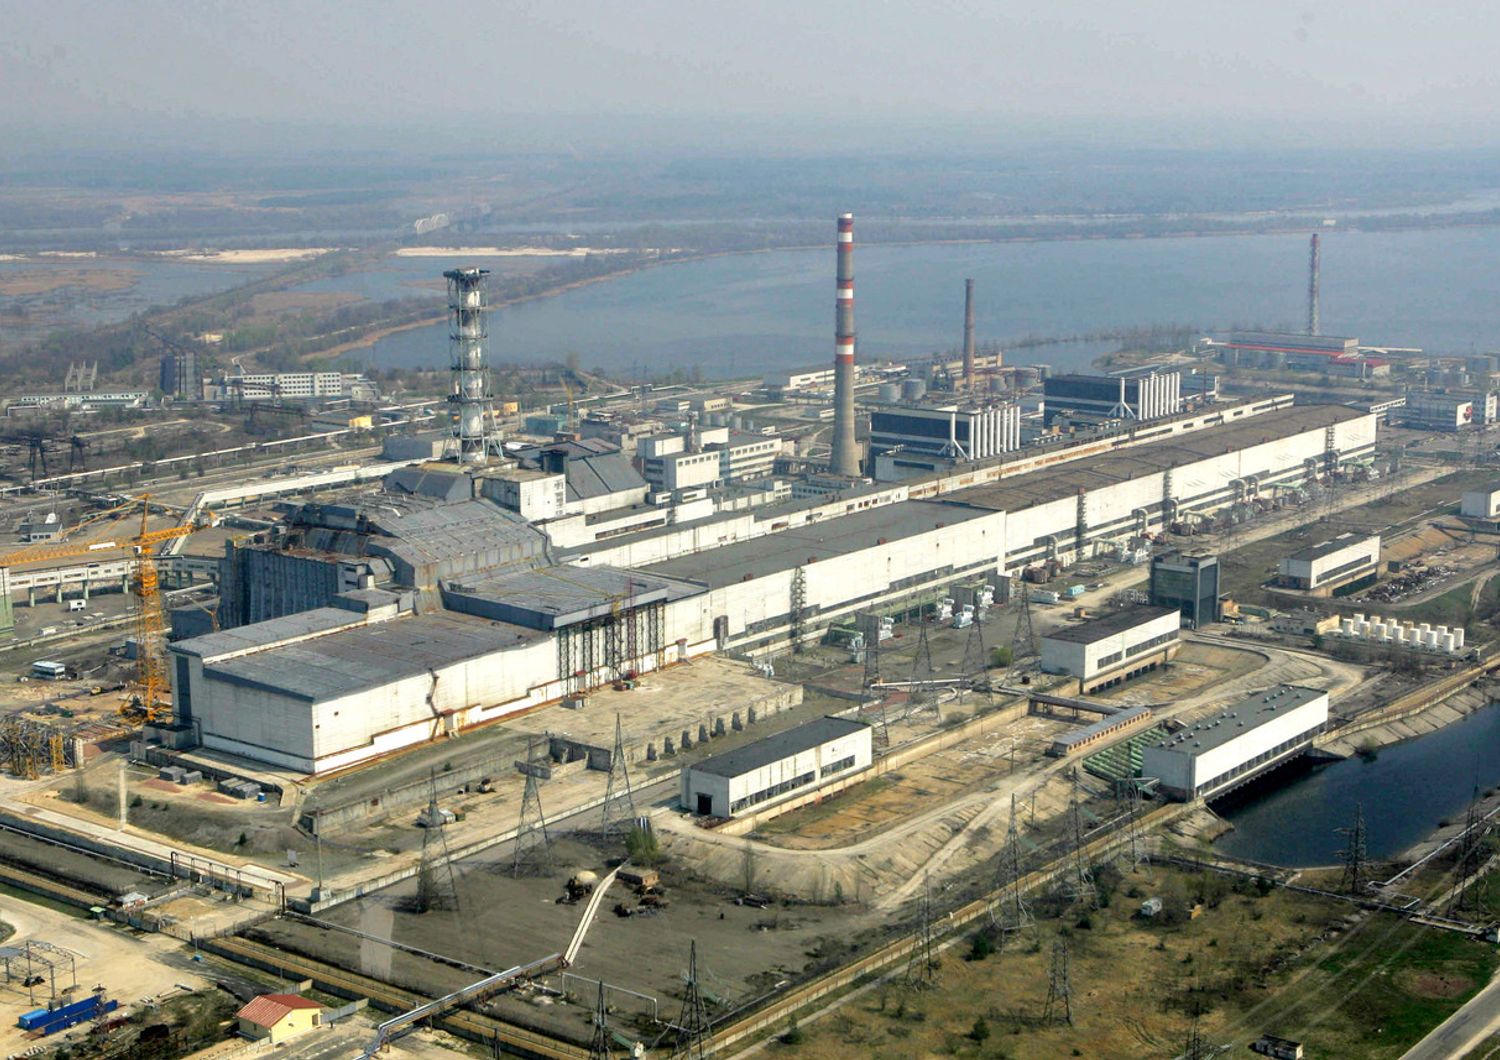 La centrale nucleare di Chernobyl vista dall'alto&nbsp;